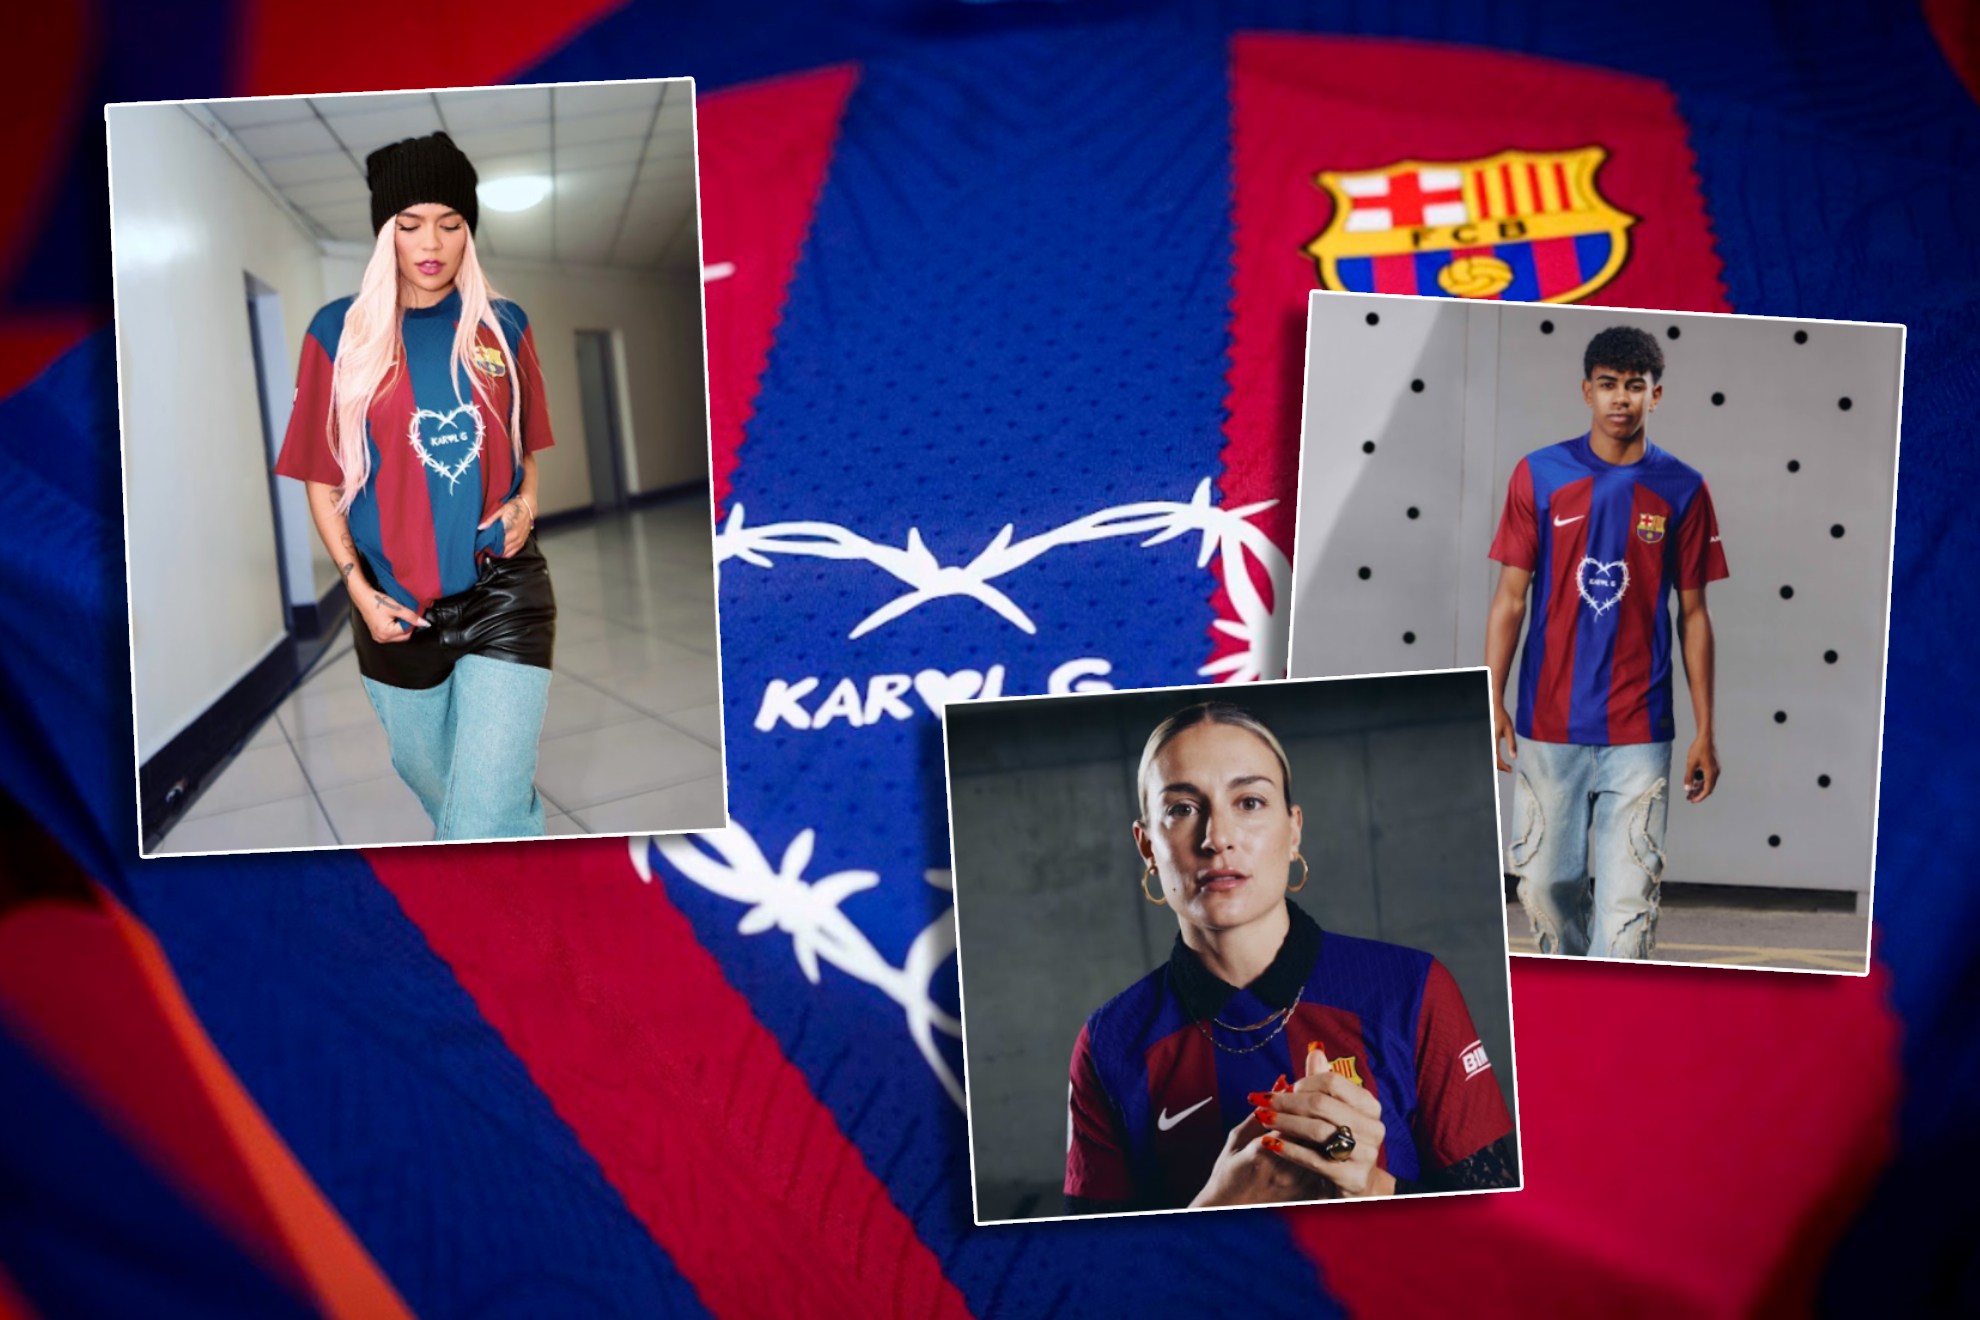 El pastizal que tendrs que pagar por la exclusiva camiseta del Barcelona y Karol G